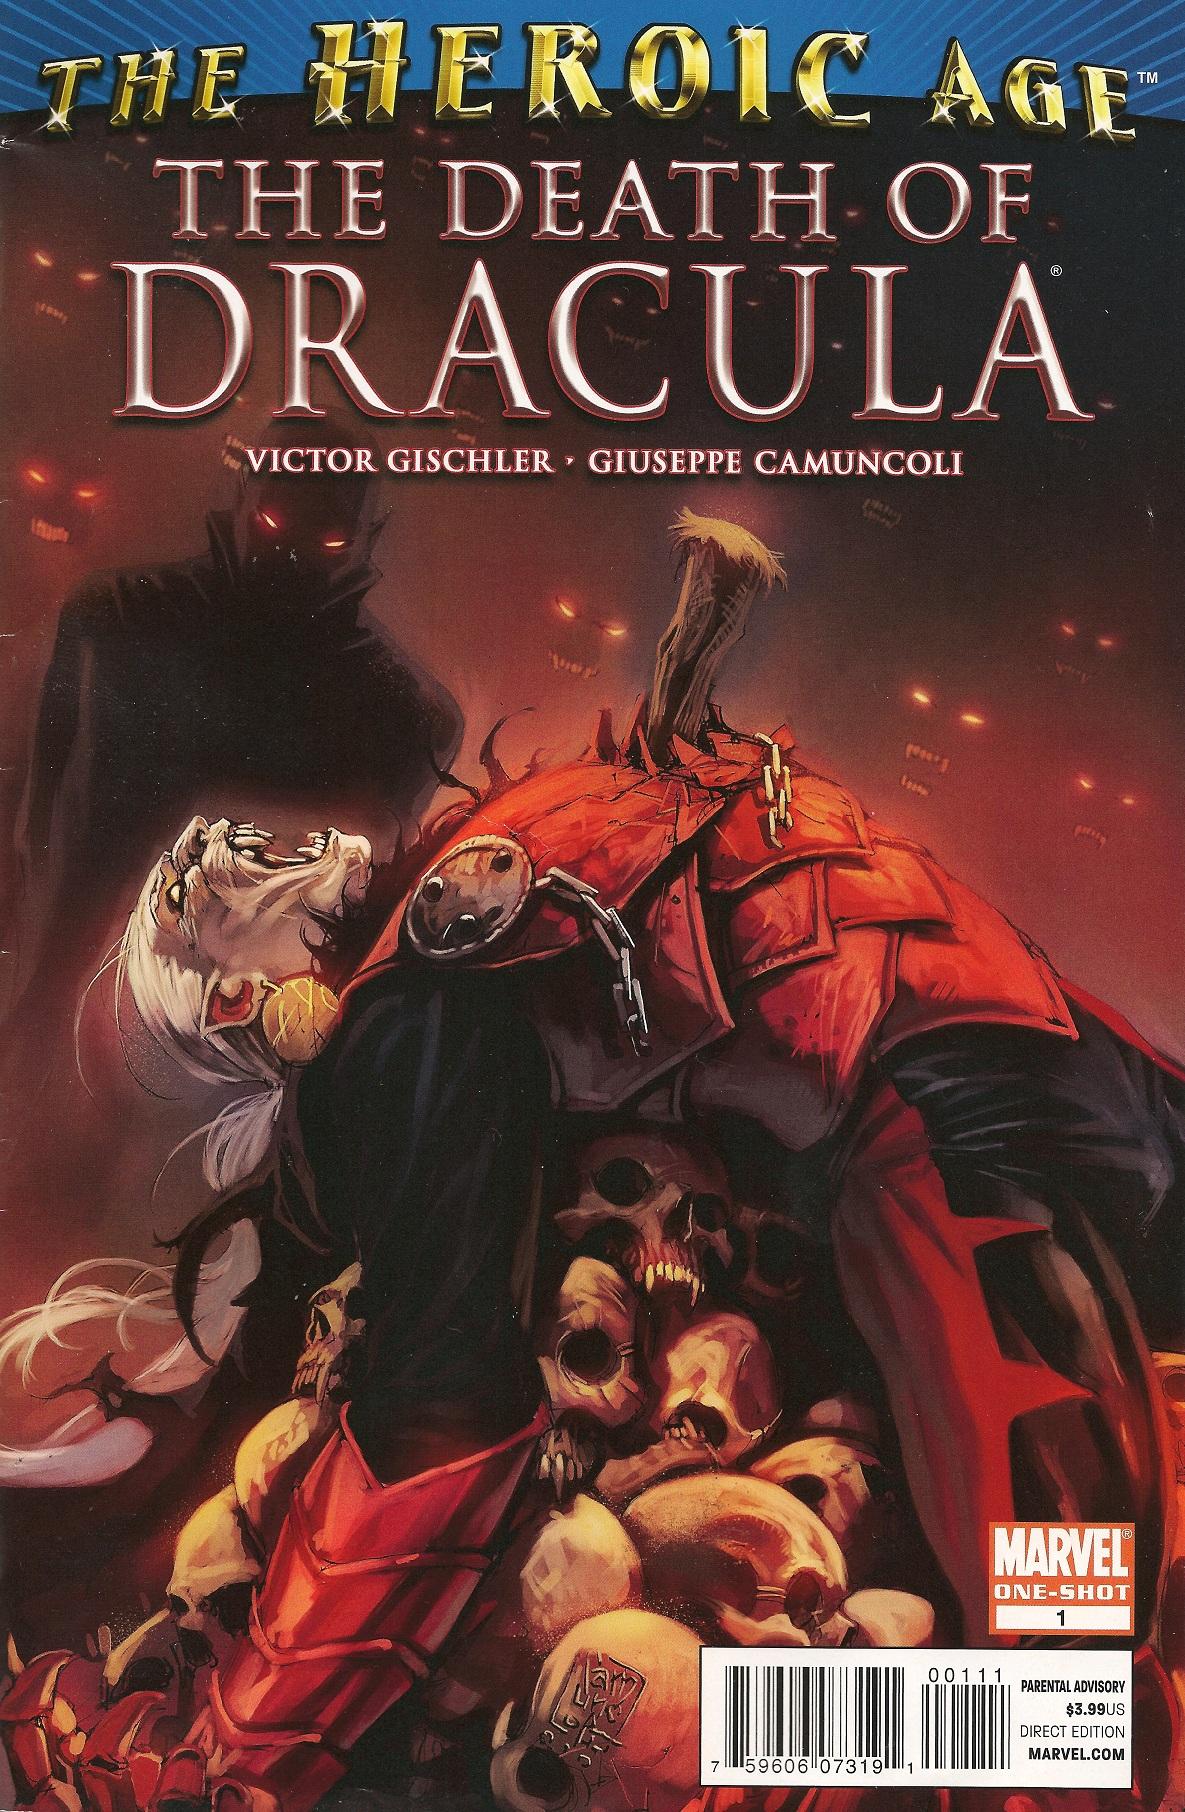 Death of Dracula Vol. 1 #1